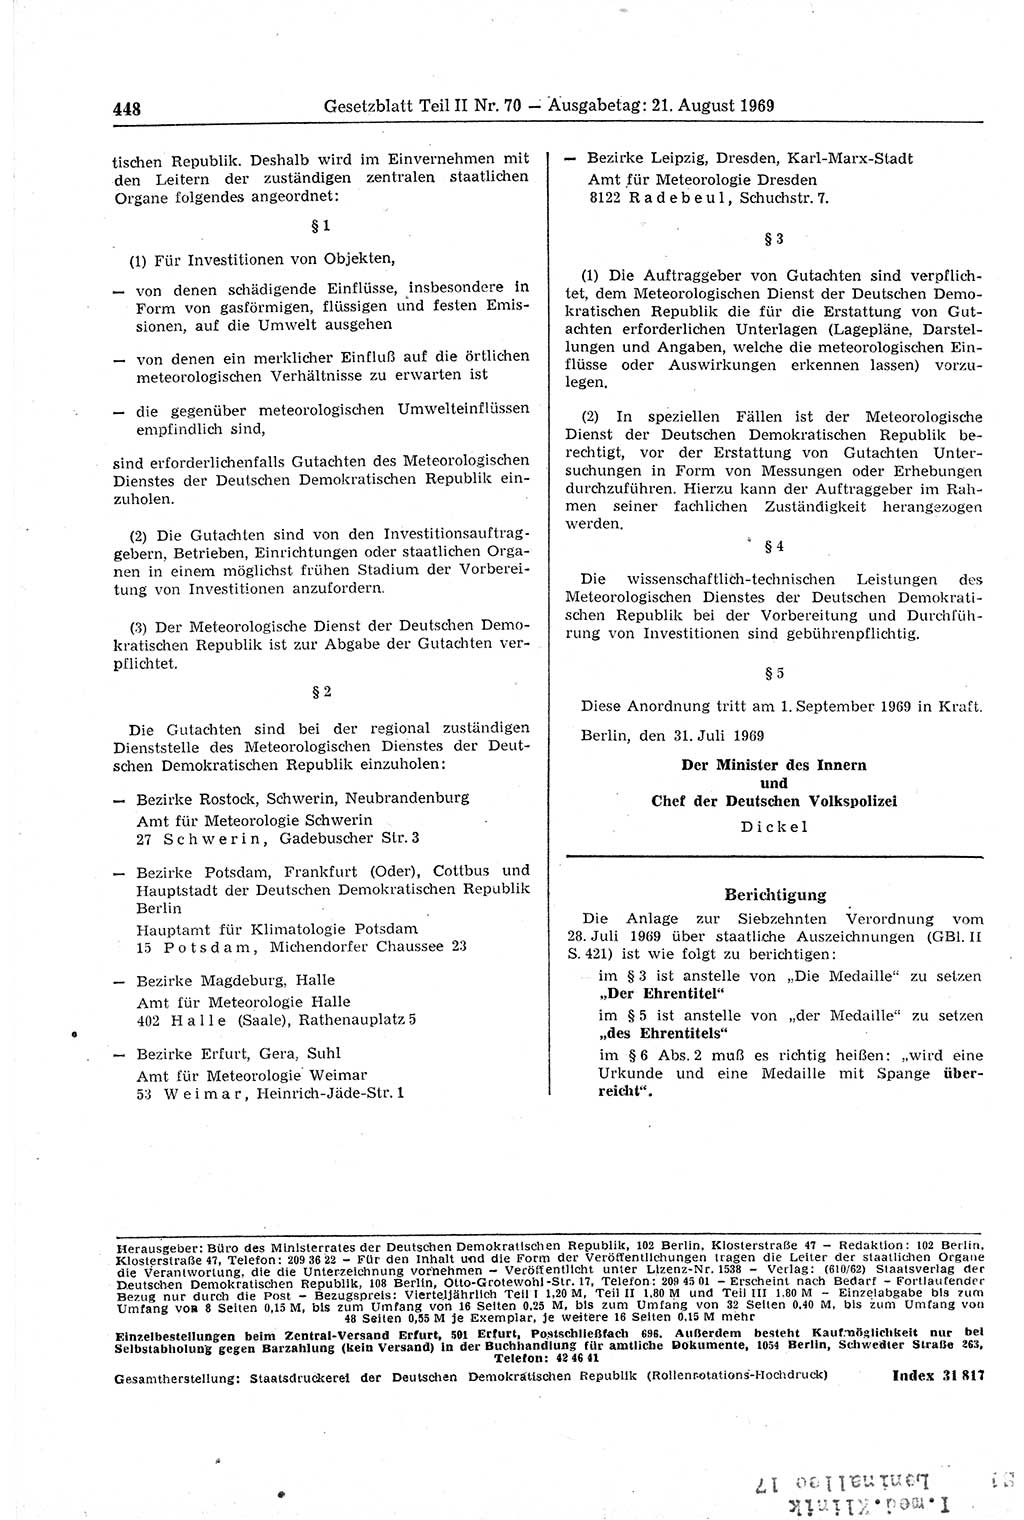 Gesetzblatt (GBl.) der Deutschen Demokratischen Republik (DDR) Teil ⅠⅠ 1969, Seite 448 (GBl. DDR ⅠⅠ 1969, S. 448)